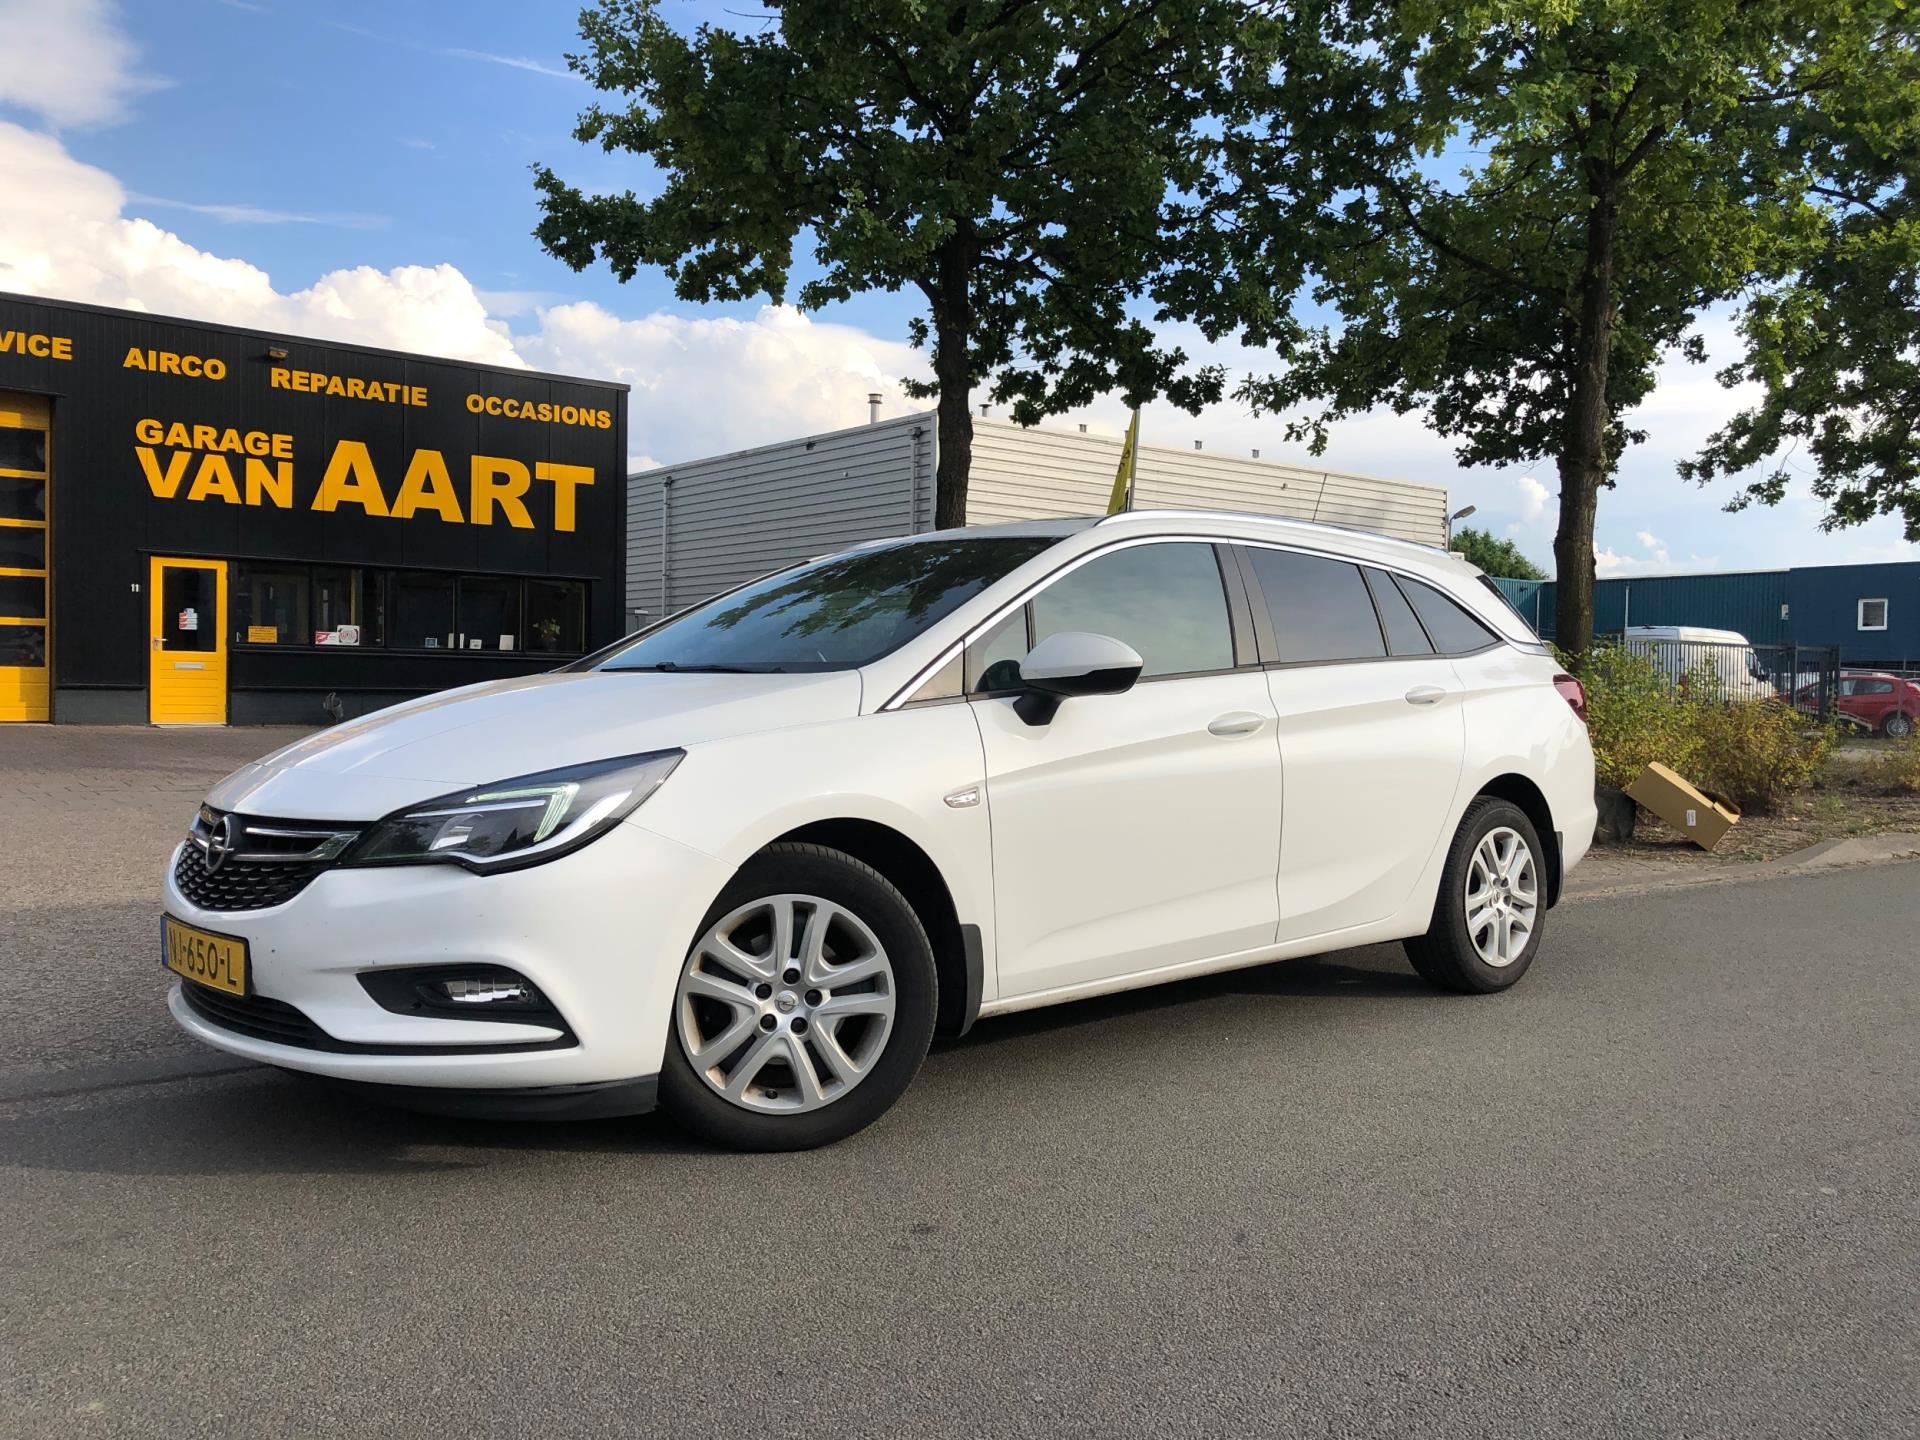 Opel Astra Sports Tourer occasion - Garage van Aart